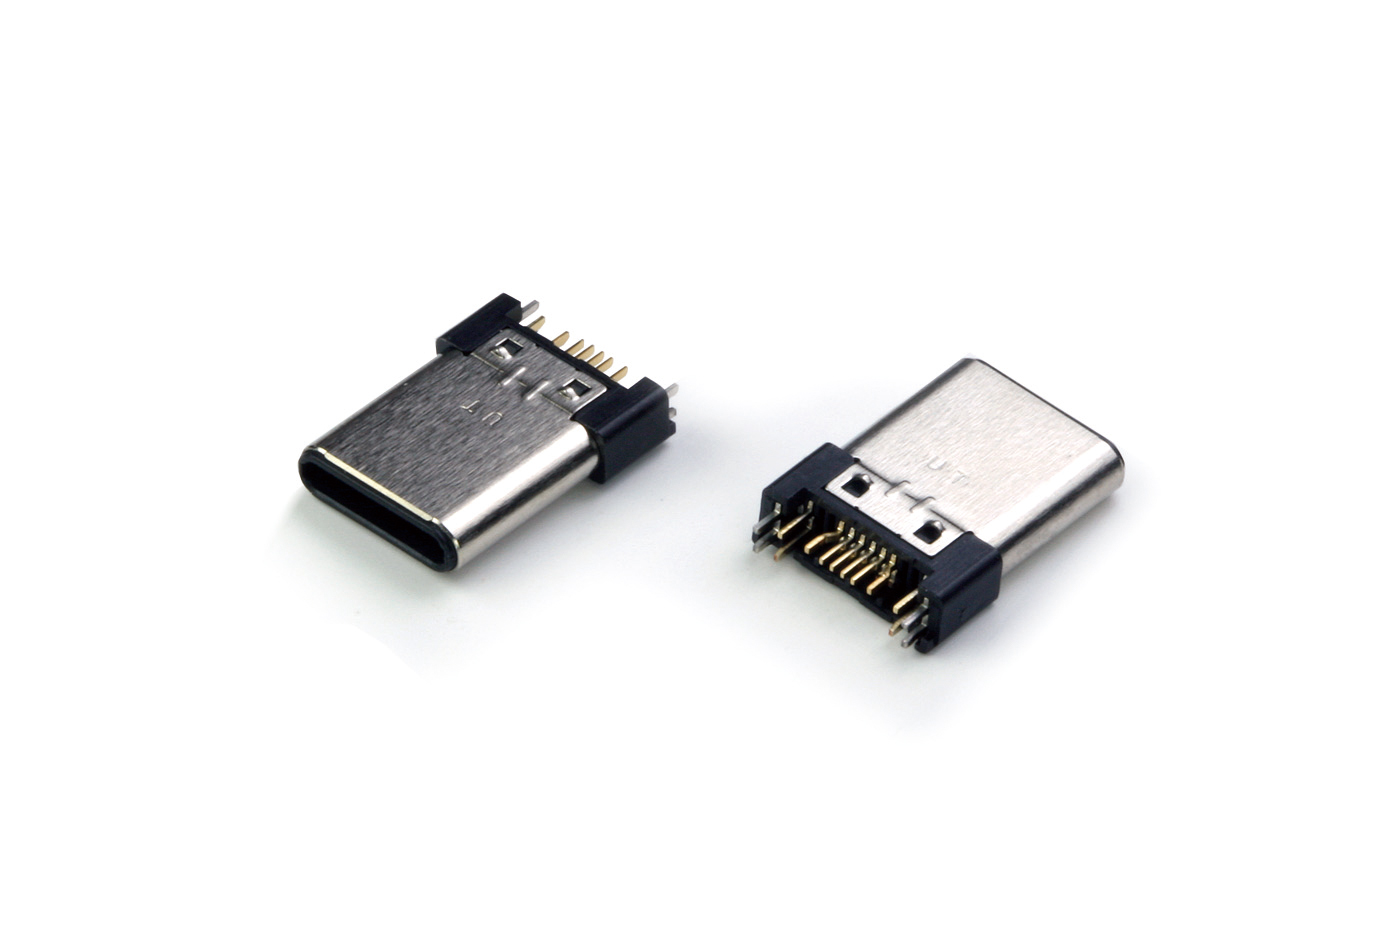 USB 2.0 TYPE-C PLUG_Vconn II